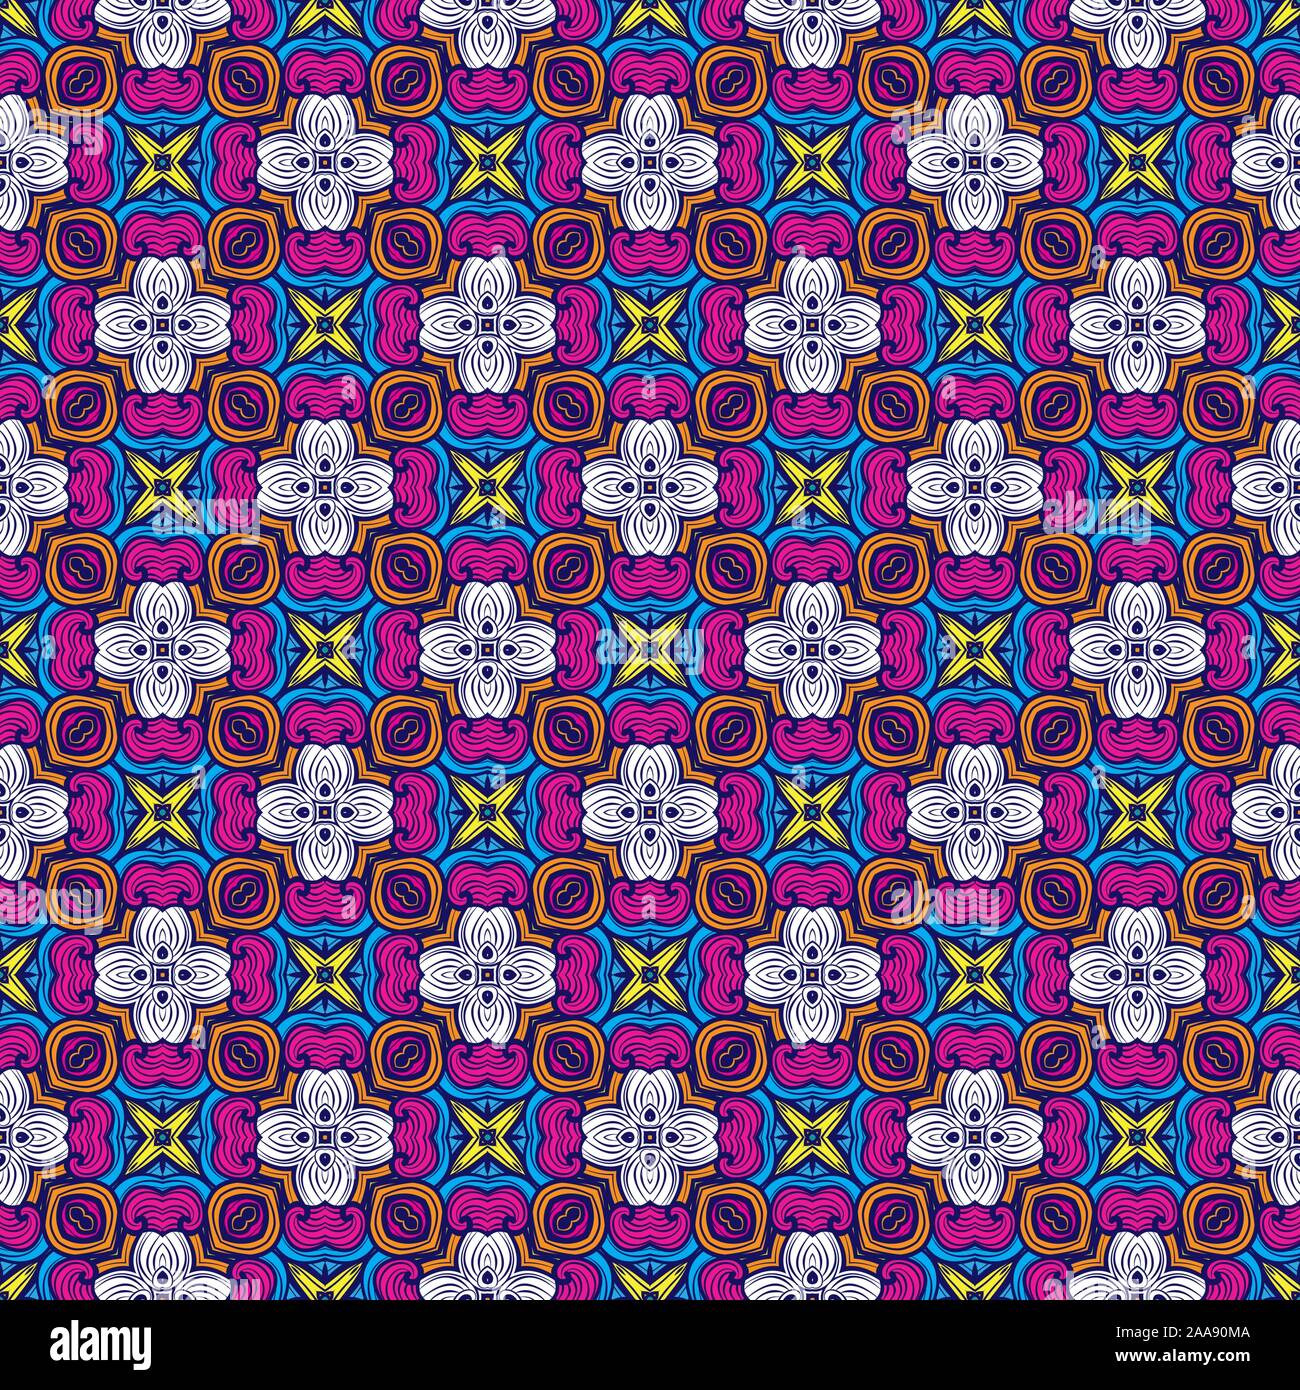 Seamless Abstract Pattern Arabesque fond traditionnel géométrique. L'arabe marocain, Portugal, Damas Floral pour tapis, tuiles, texture de tissu. Banque D'Images